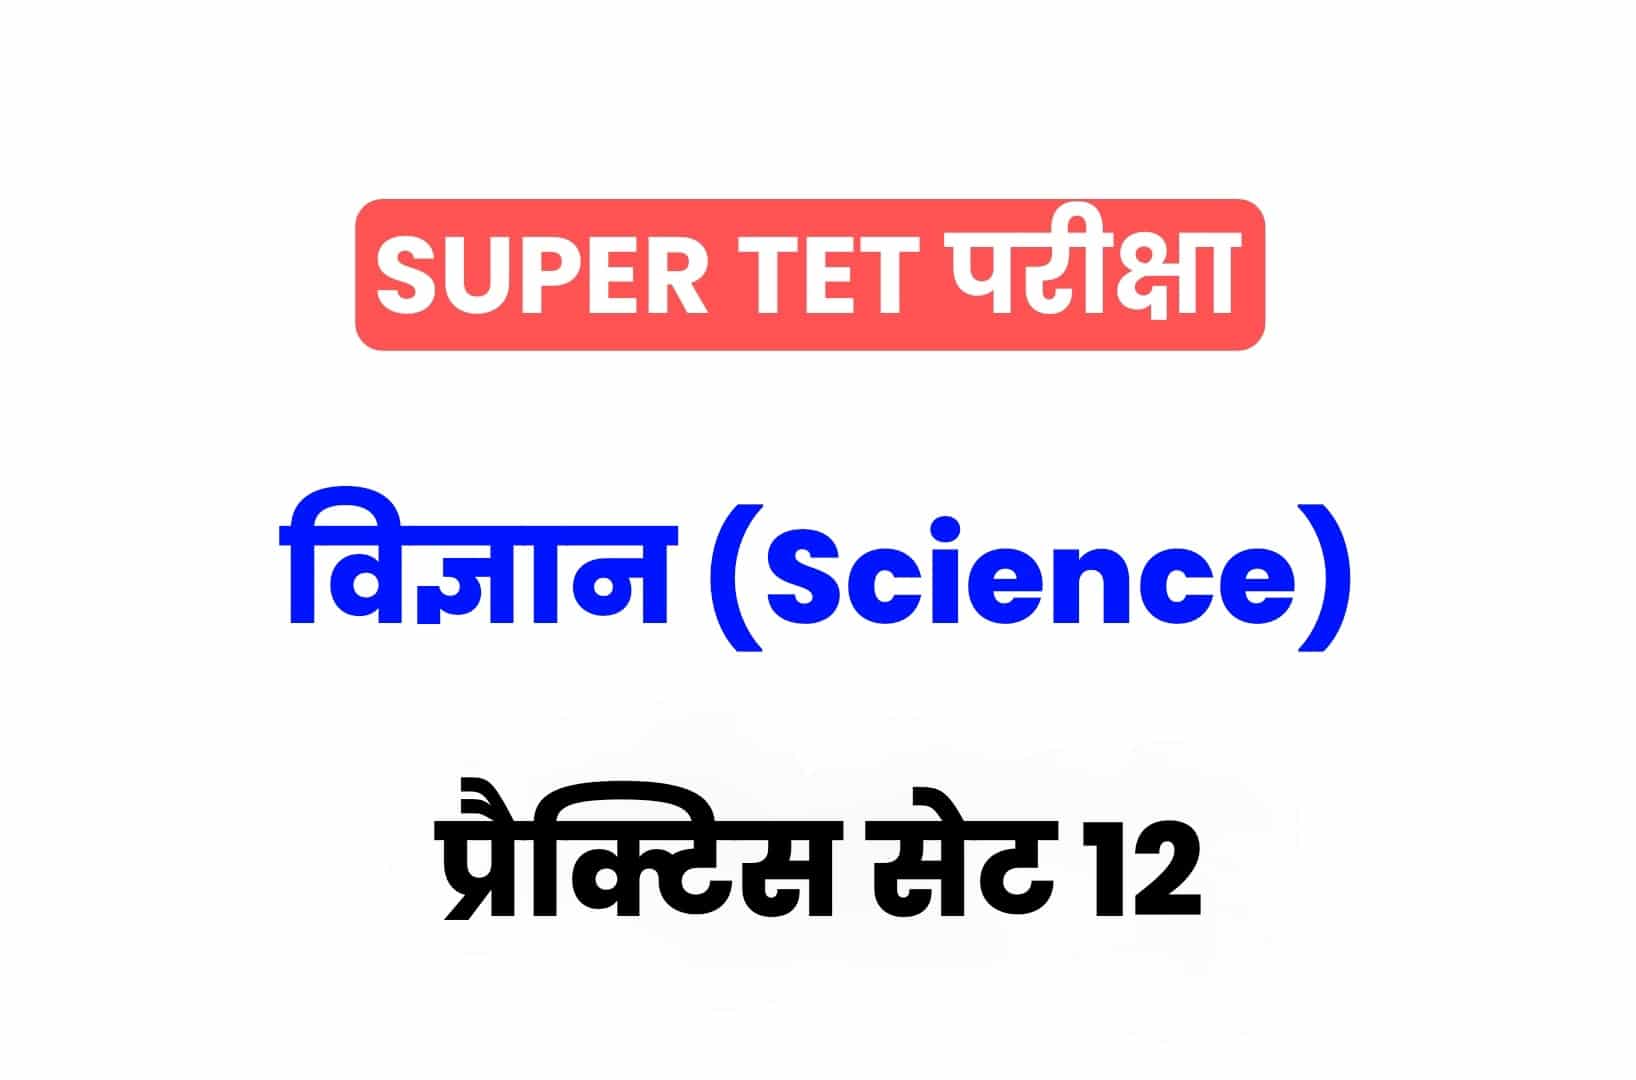 SUPER TET 2022 Science प्रैक्टिस सेट 12: विज्ञान के 15 ऐसे सवाल जो आगामी सुपर टेट परीक्षा में पूछे जा सकते हैं, जरूर देखें